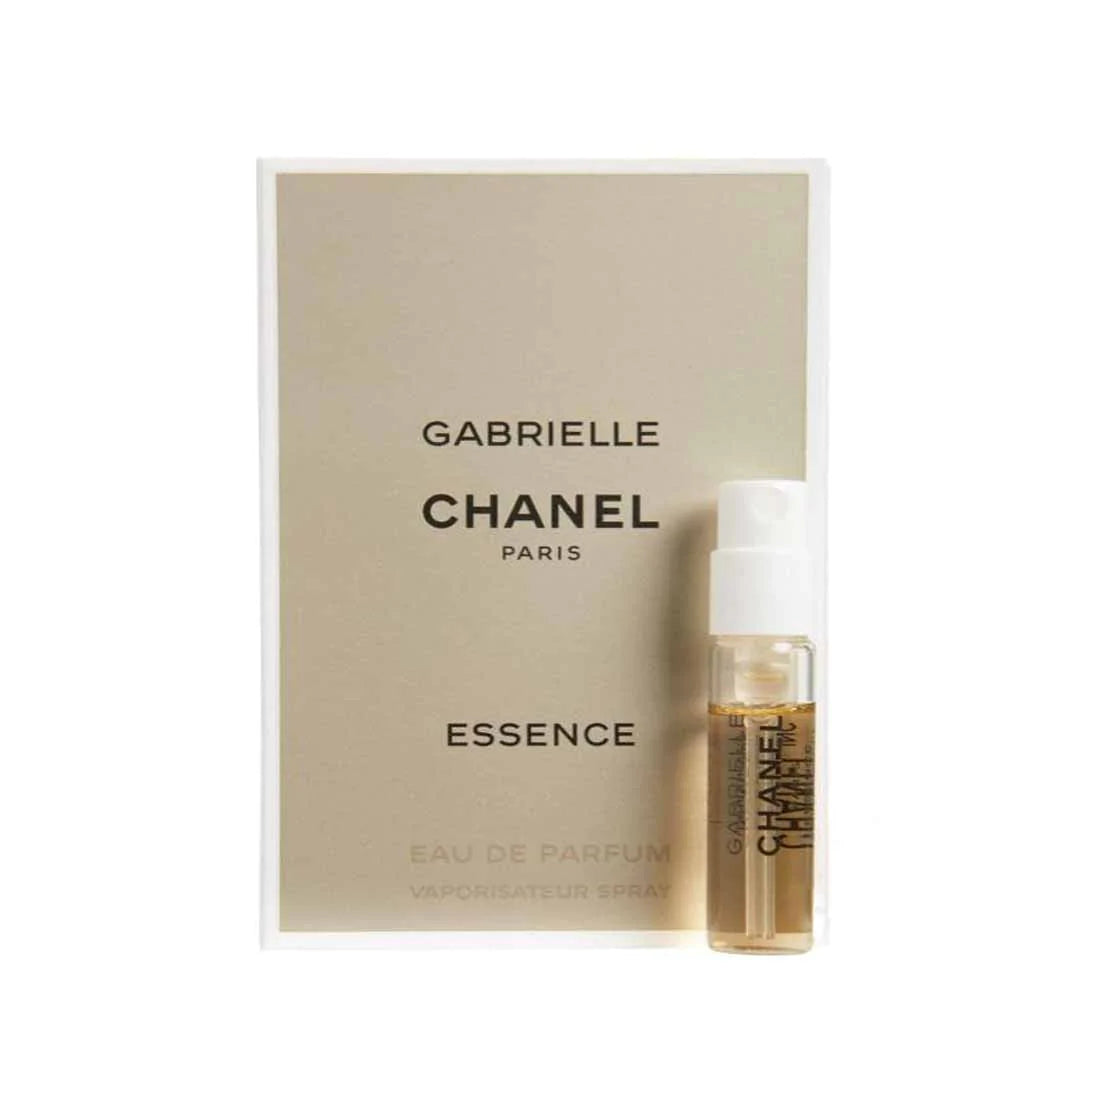 Shop Authenic GABRIELLE CHANEL ESSENCE EAU DE PARFUM exclusive at